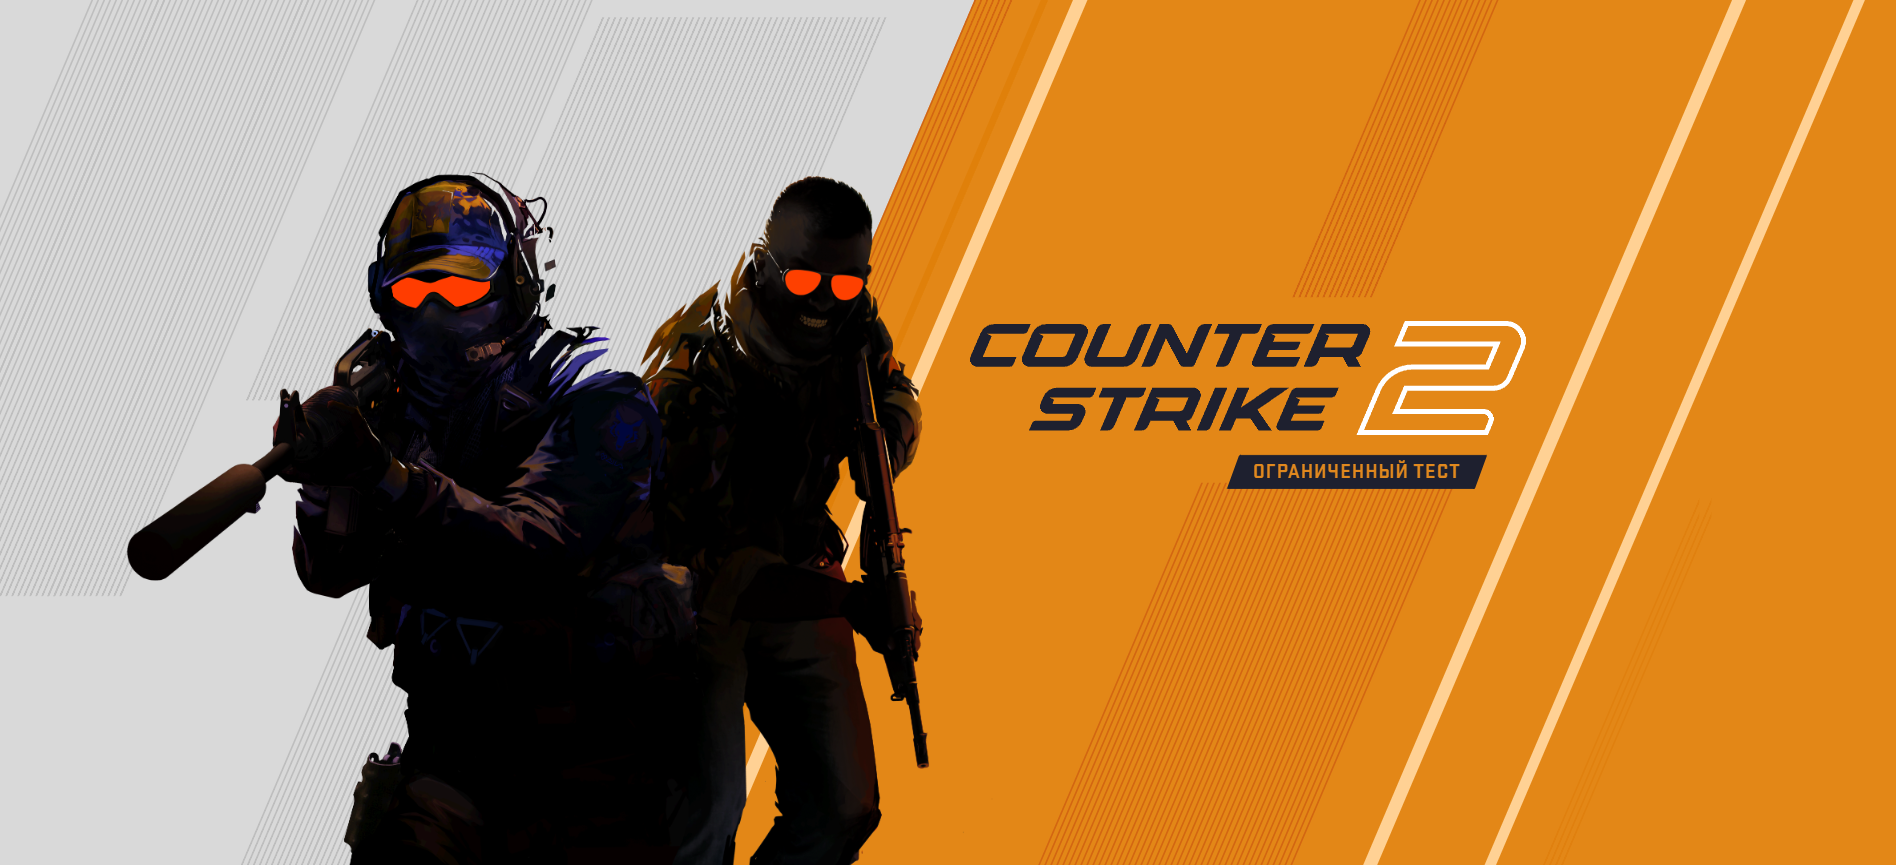 Counter-Strike 2: что известно о продолжении CS:GO?